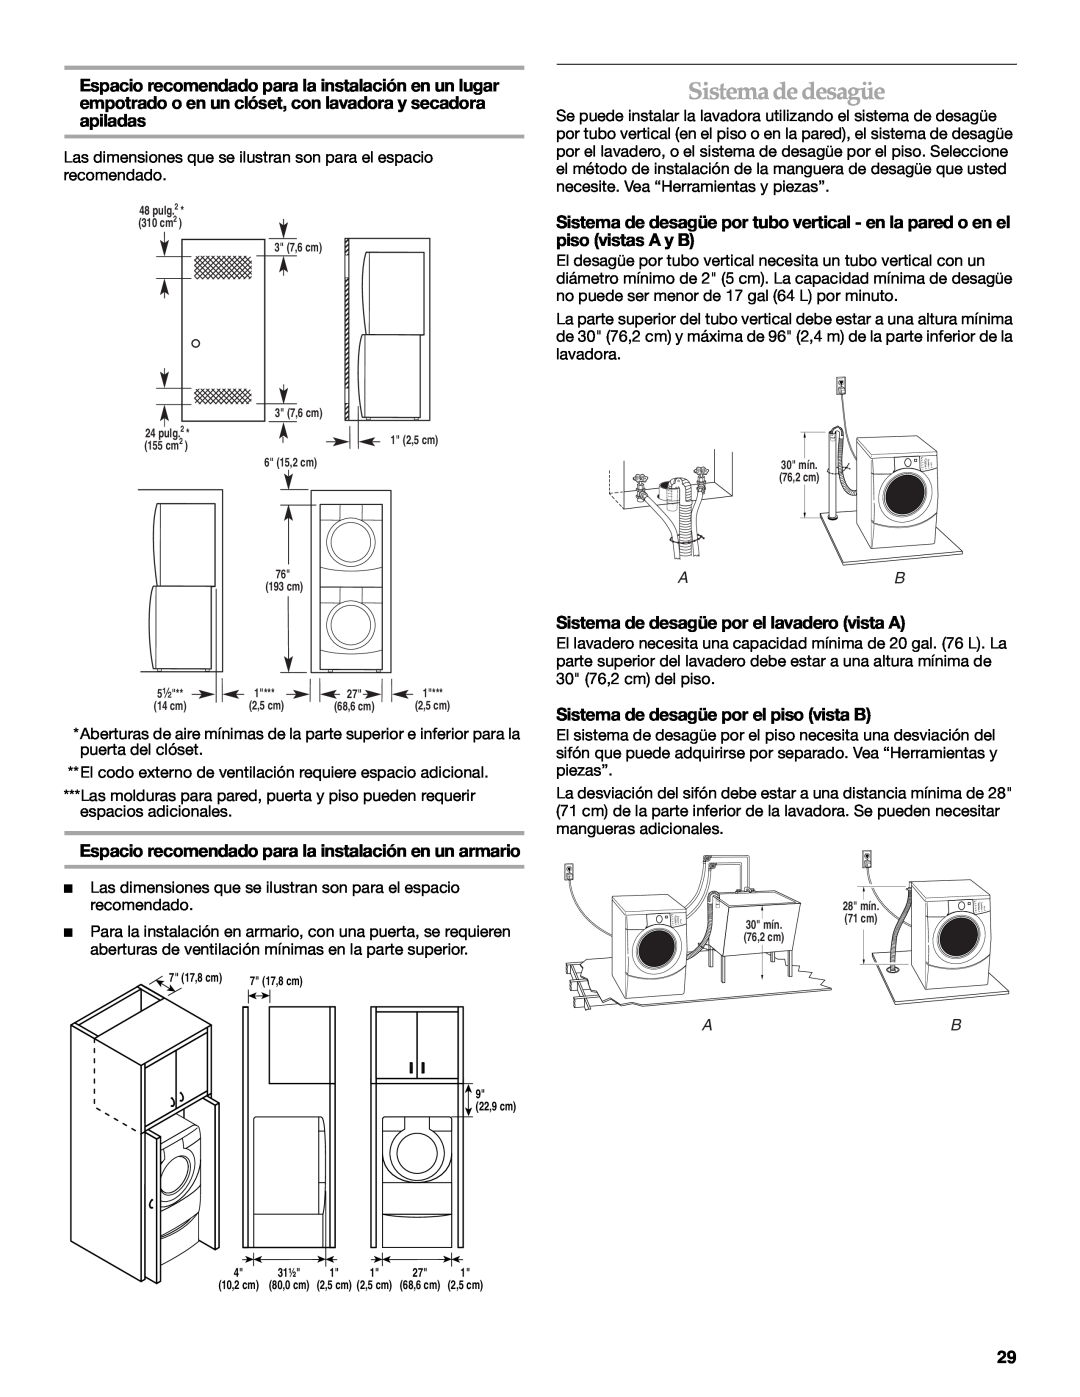 Maytag 8182969 manual Sistema de desagüe, Espacio recomendado para la instalación en un armario 